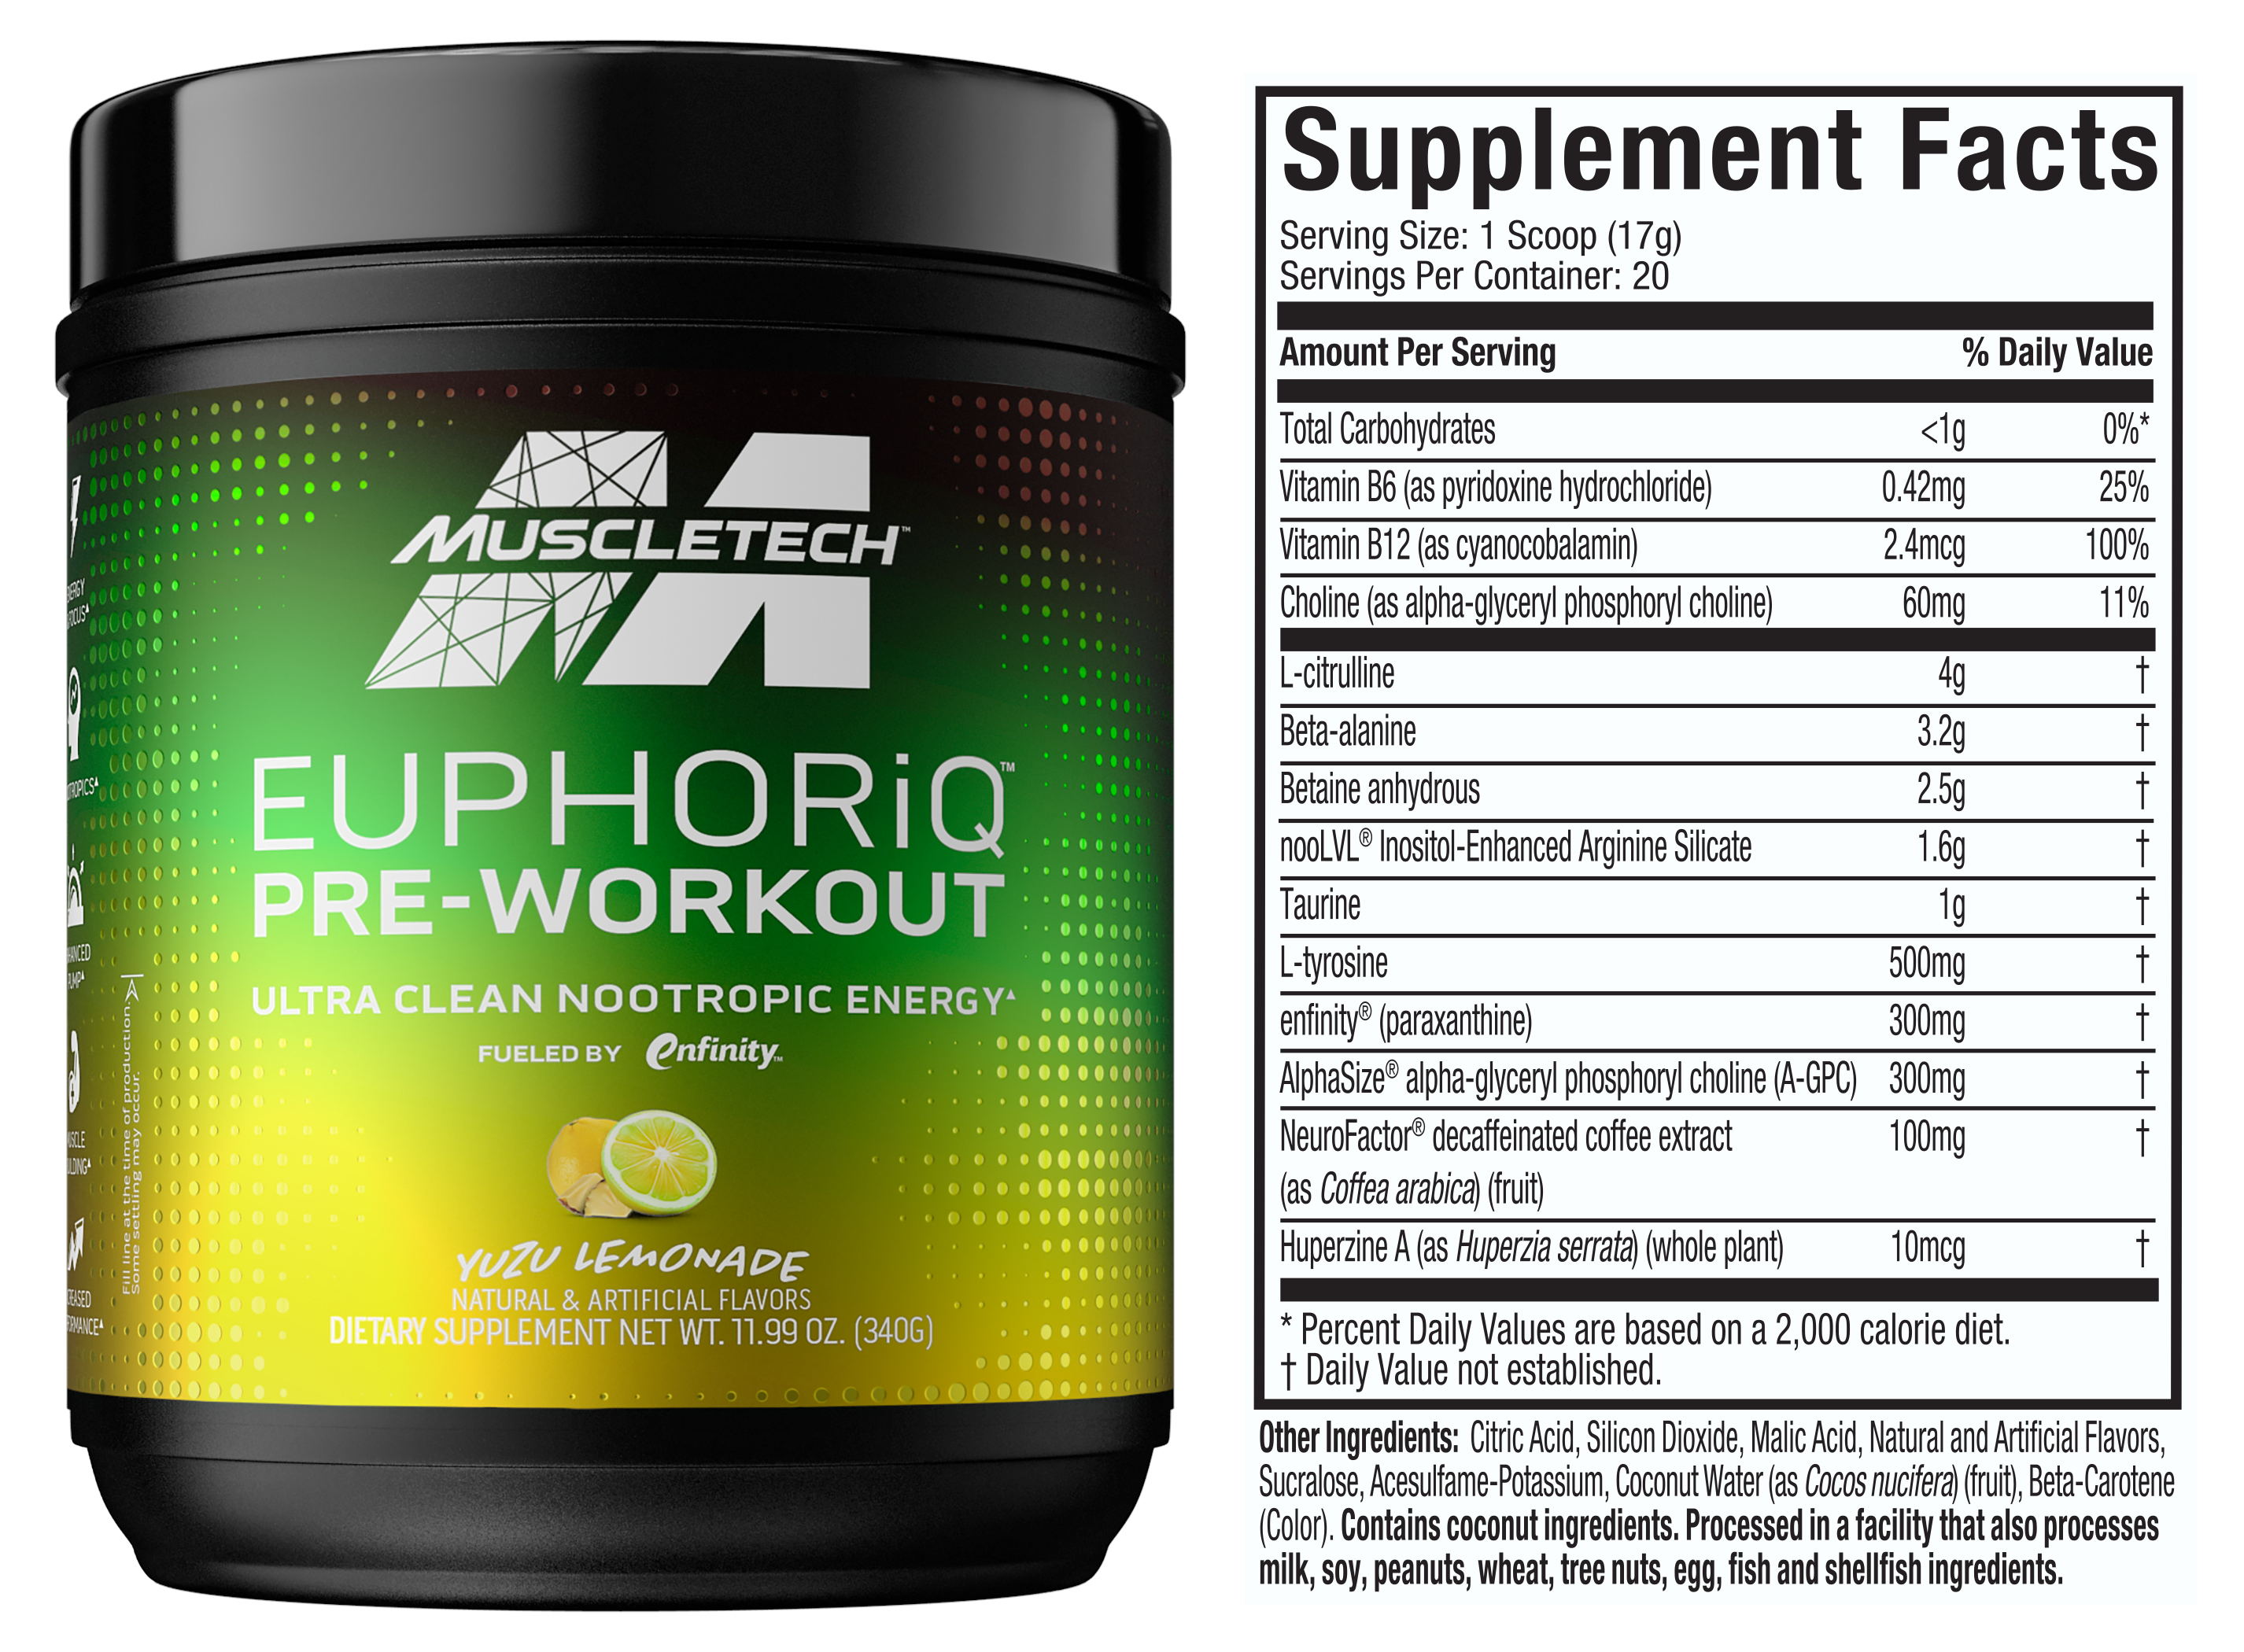 MuscleTech EuphoriQ Pre-Workout Supplement